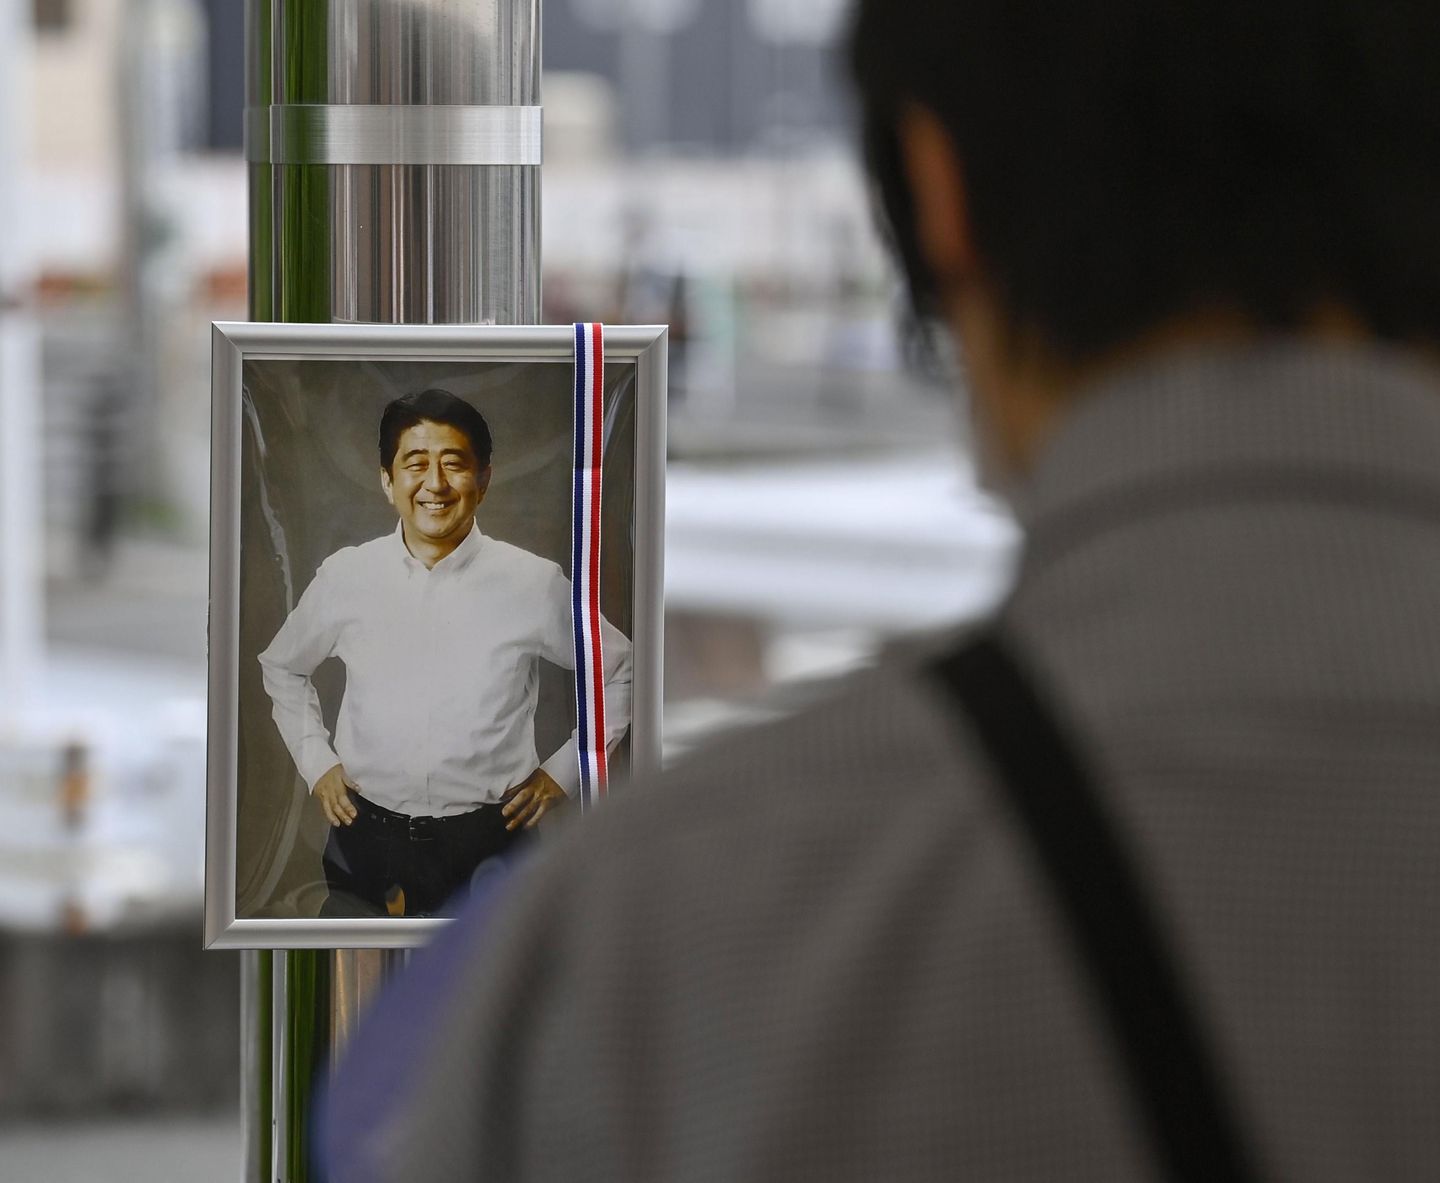 İnsanlar yas tutarken Abe'nin güvenlik açığıyla ilgili polis soruşturması başladı